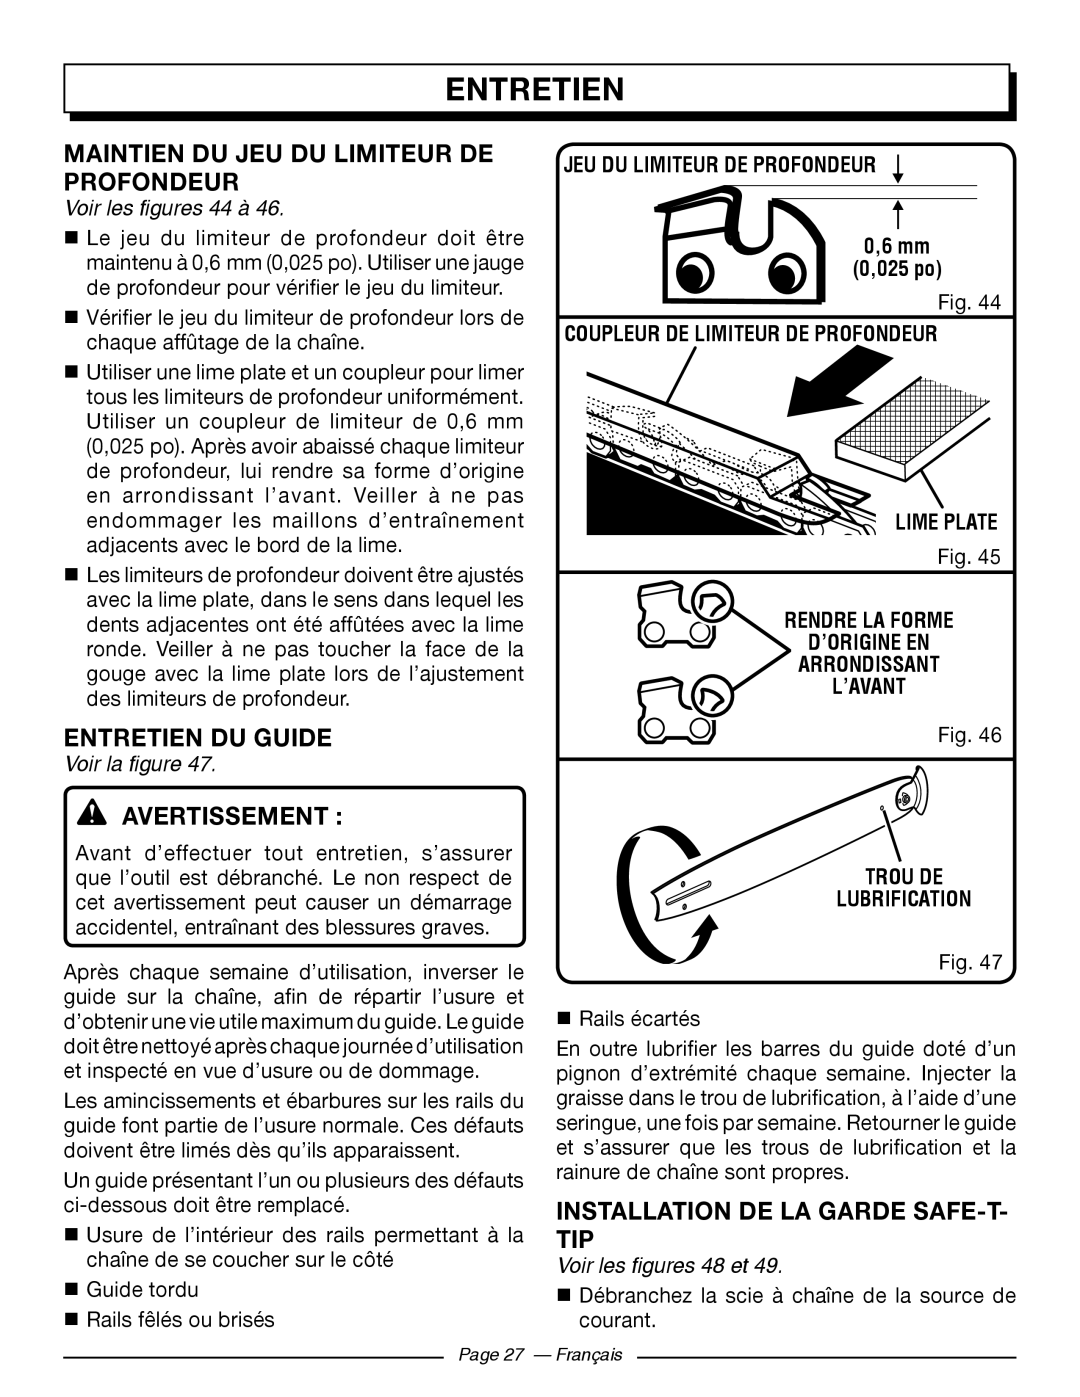 Homelite UT43102 Maintien Du Jeu Du Limiteur De Profondeur, Entretien Du Guide, Installation De La Garde Safe-T- Tip 